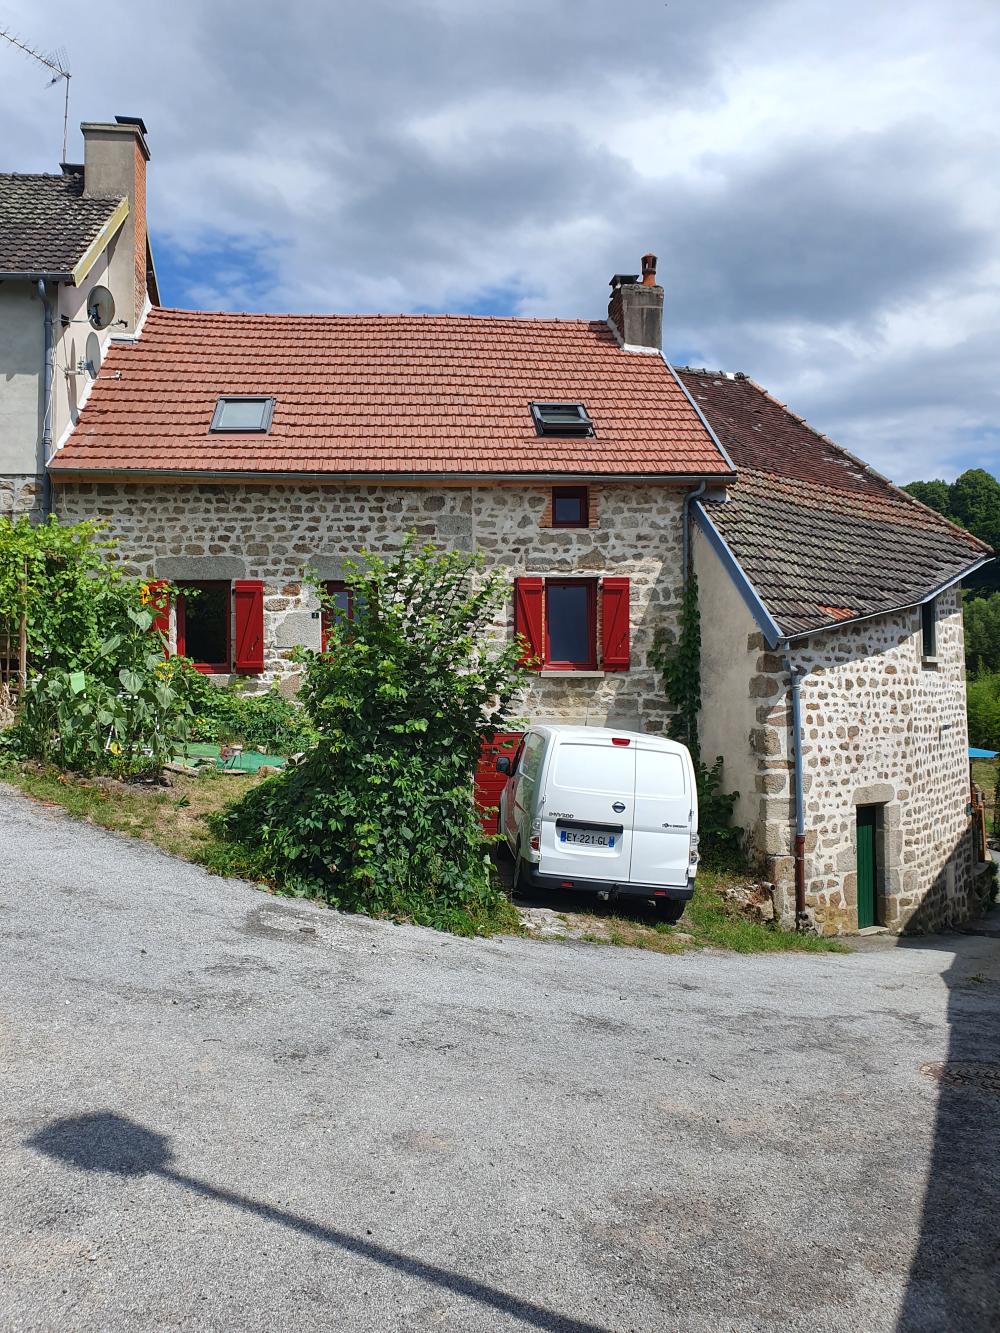 house for sale Aubusson, Creuse ( Nouvelle-Aquitaine) picture 1